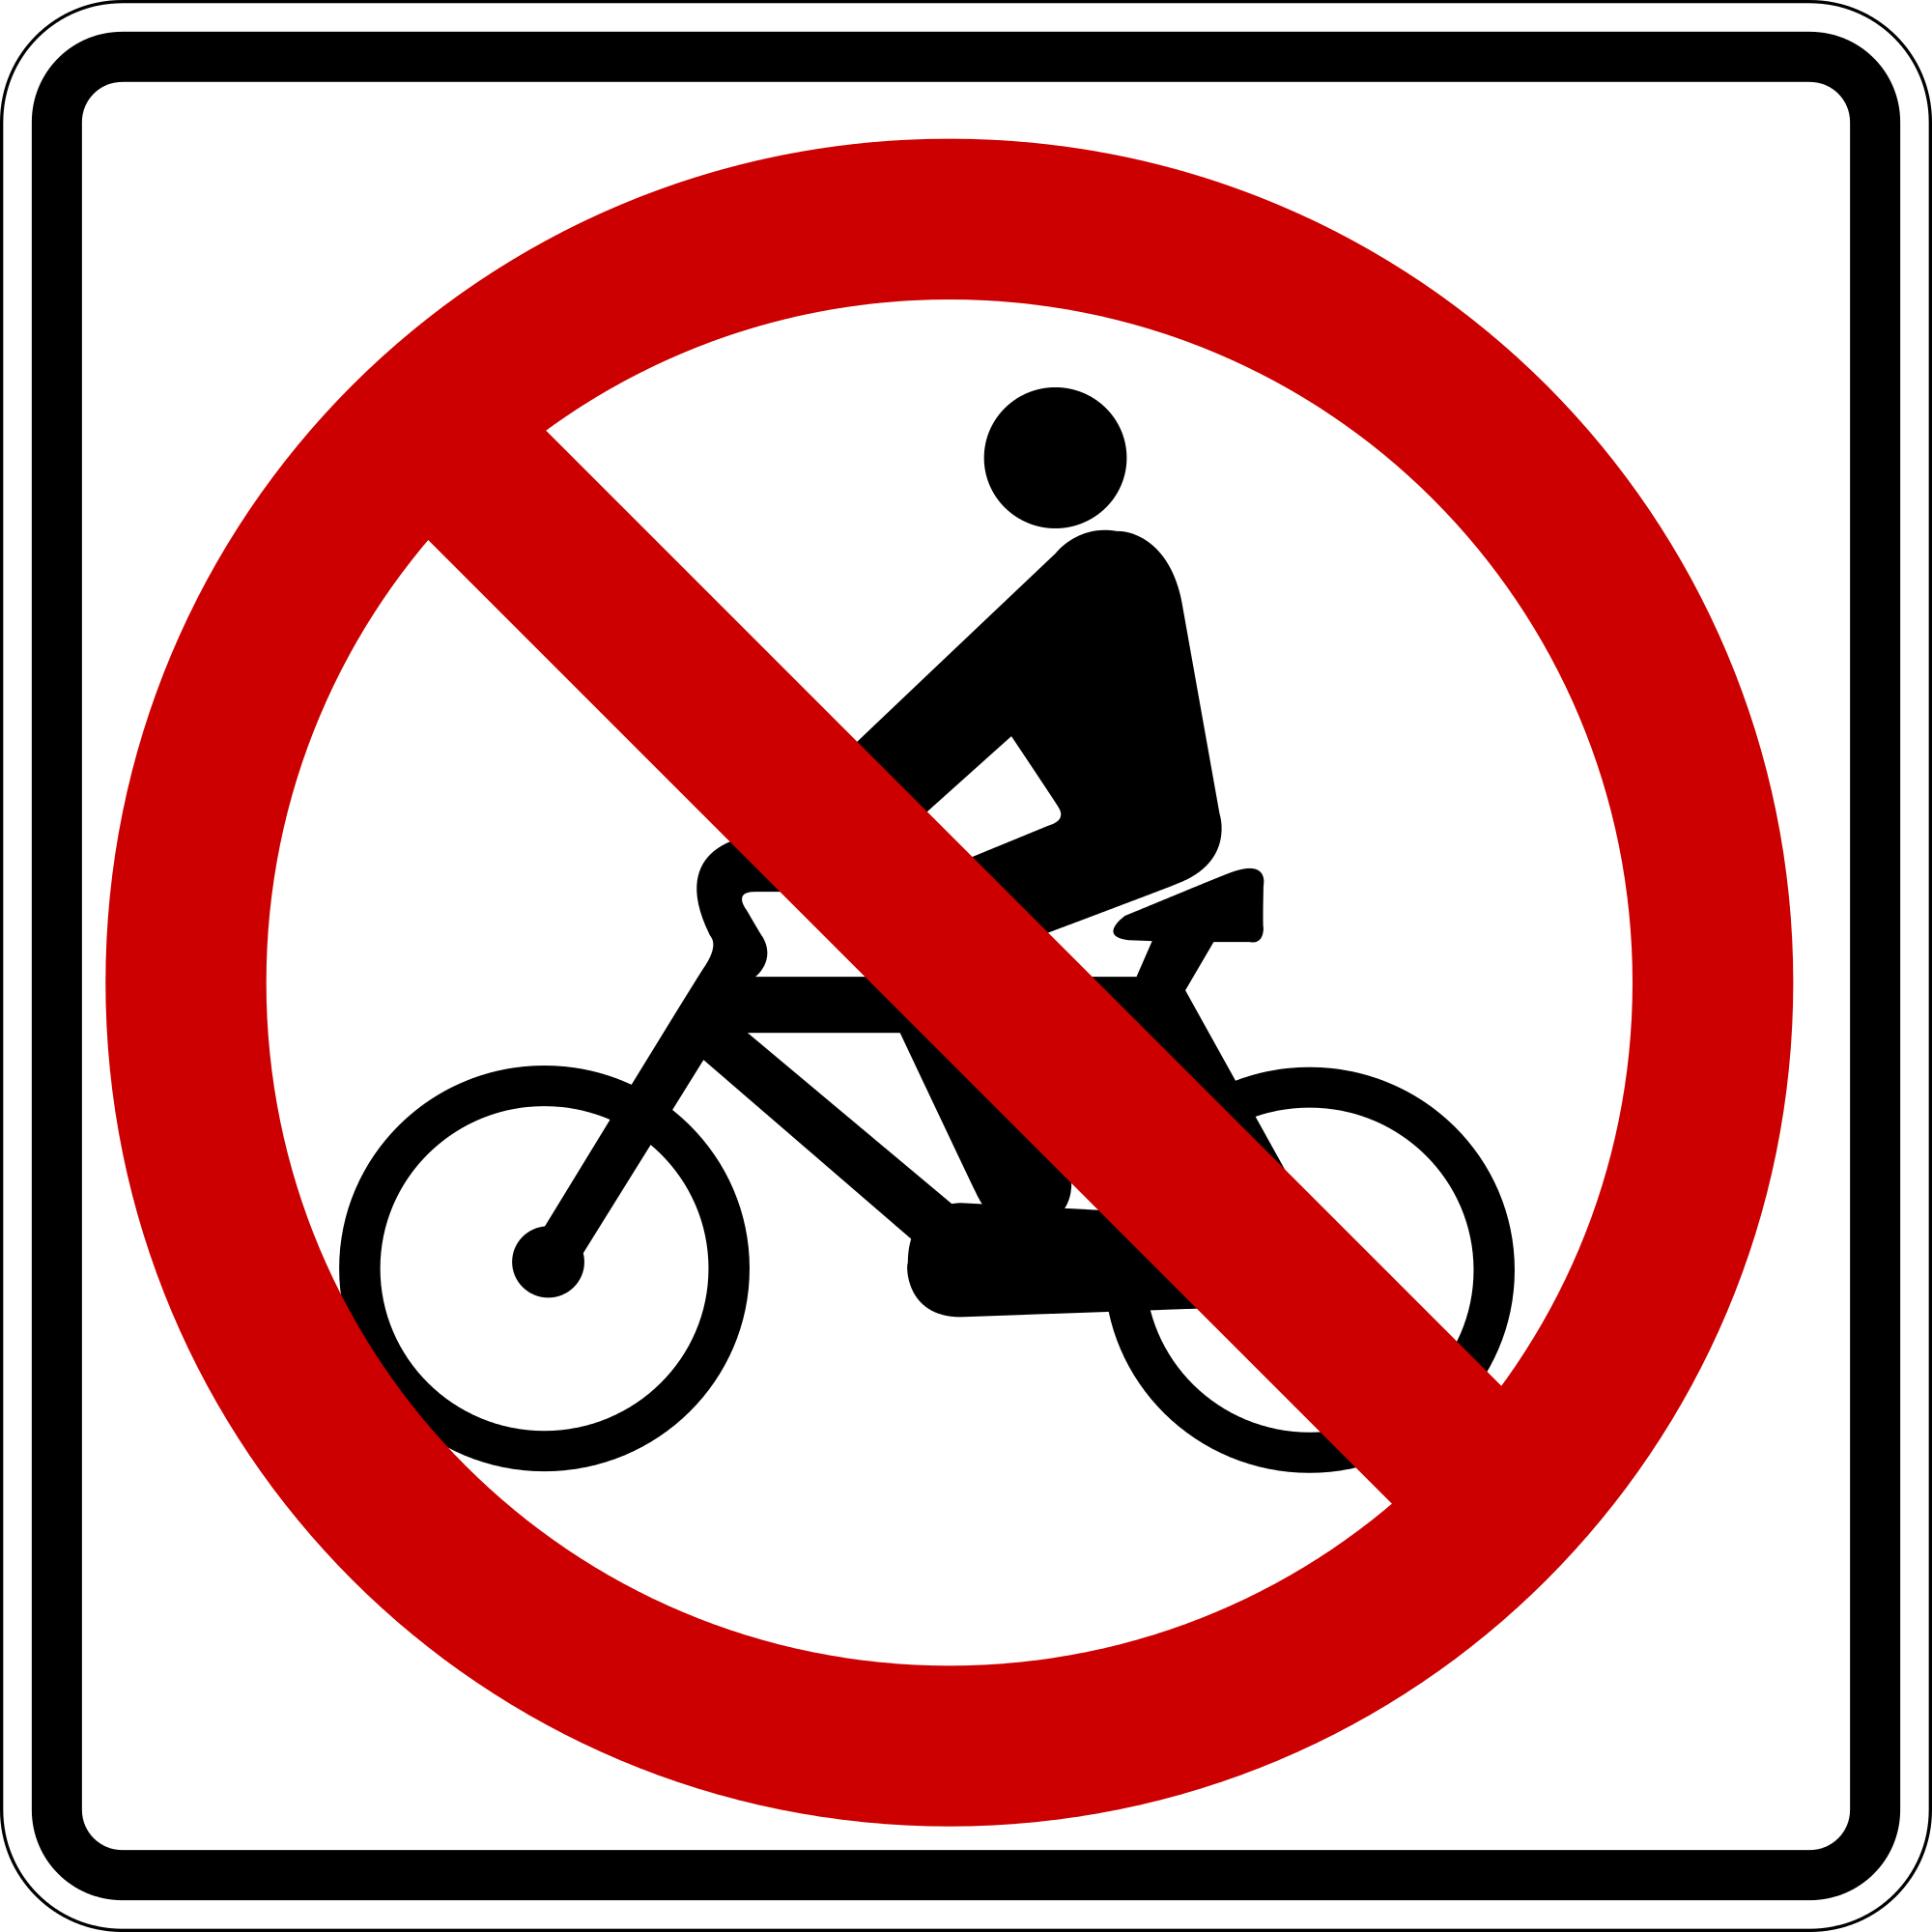 Велосипед в круге дорожный. Дорожный знак велосипед. Движение на велосипедах запрещено дорожный знак. Дорожный знак велосипед запрещен. Знак Зачеркнутый велосипед.